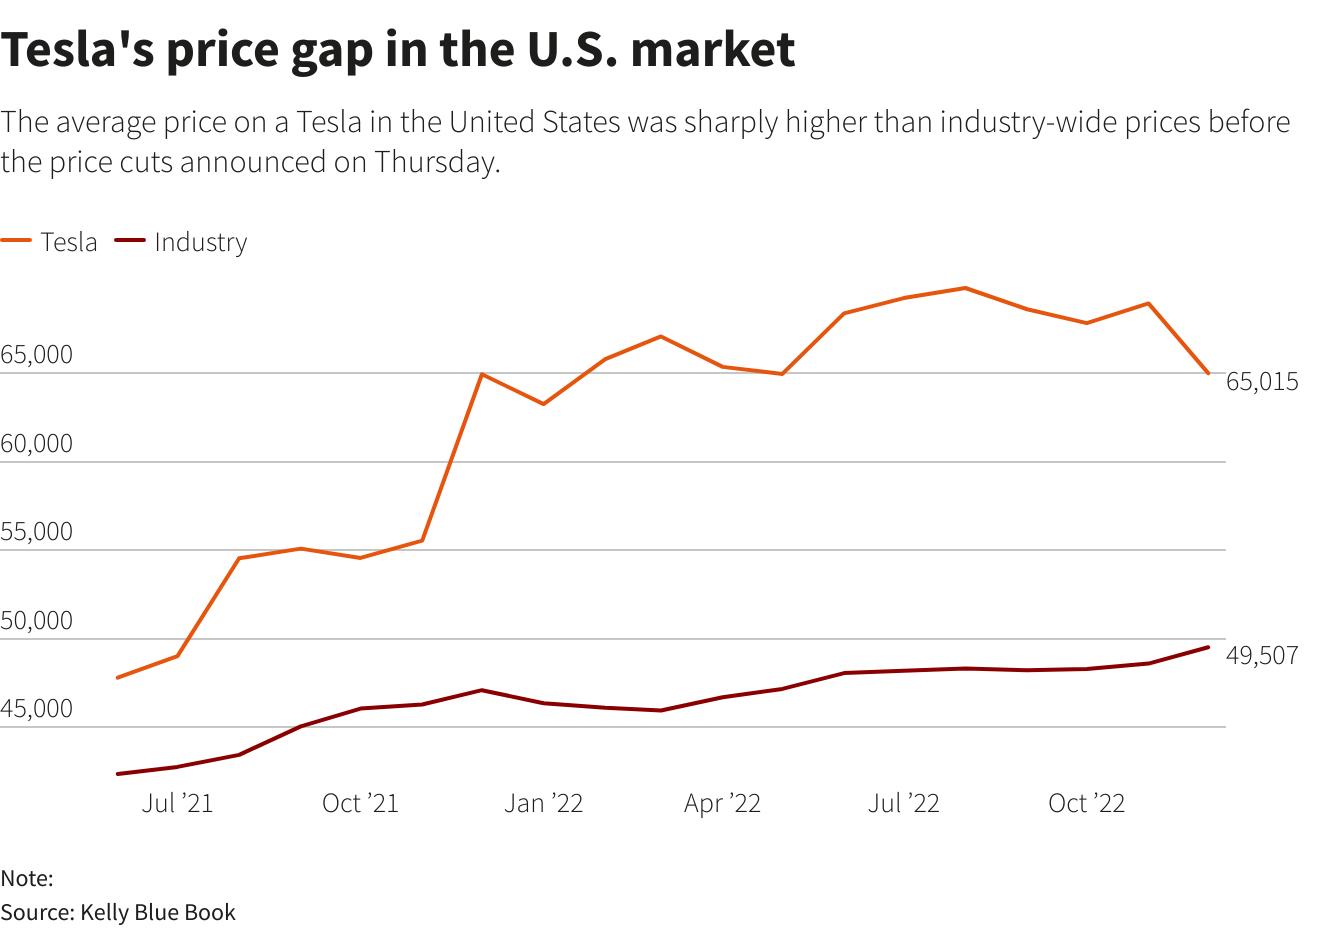 Tesla khiến cả đối thủ và khách hàng phát sốt khi giảm giá xe điện tới 20% trên toàn cầu - Ảnh 2.